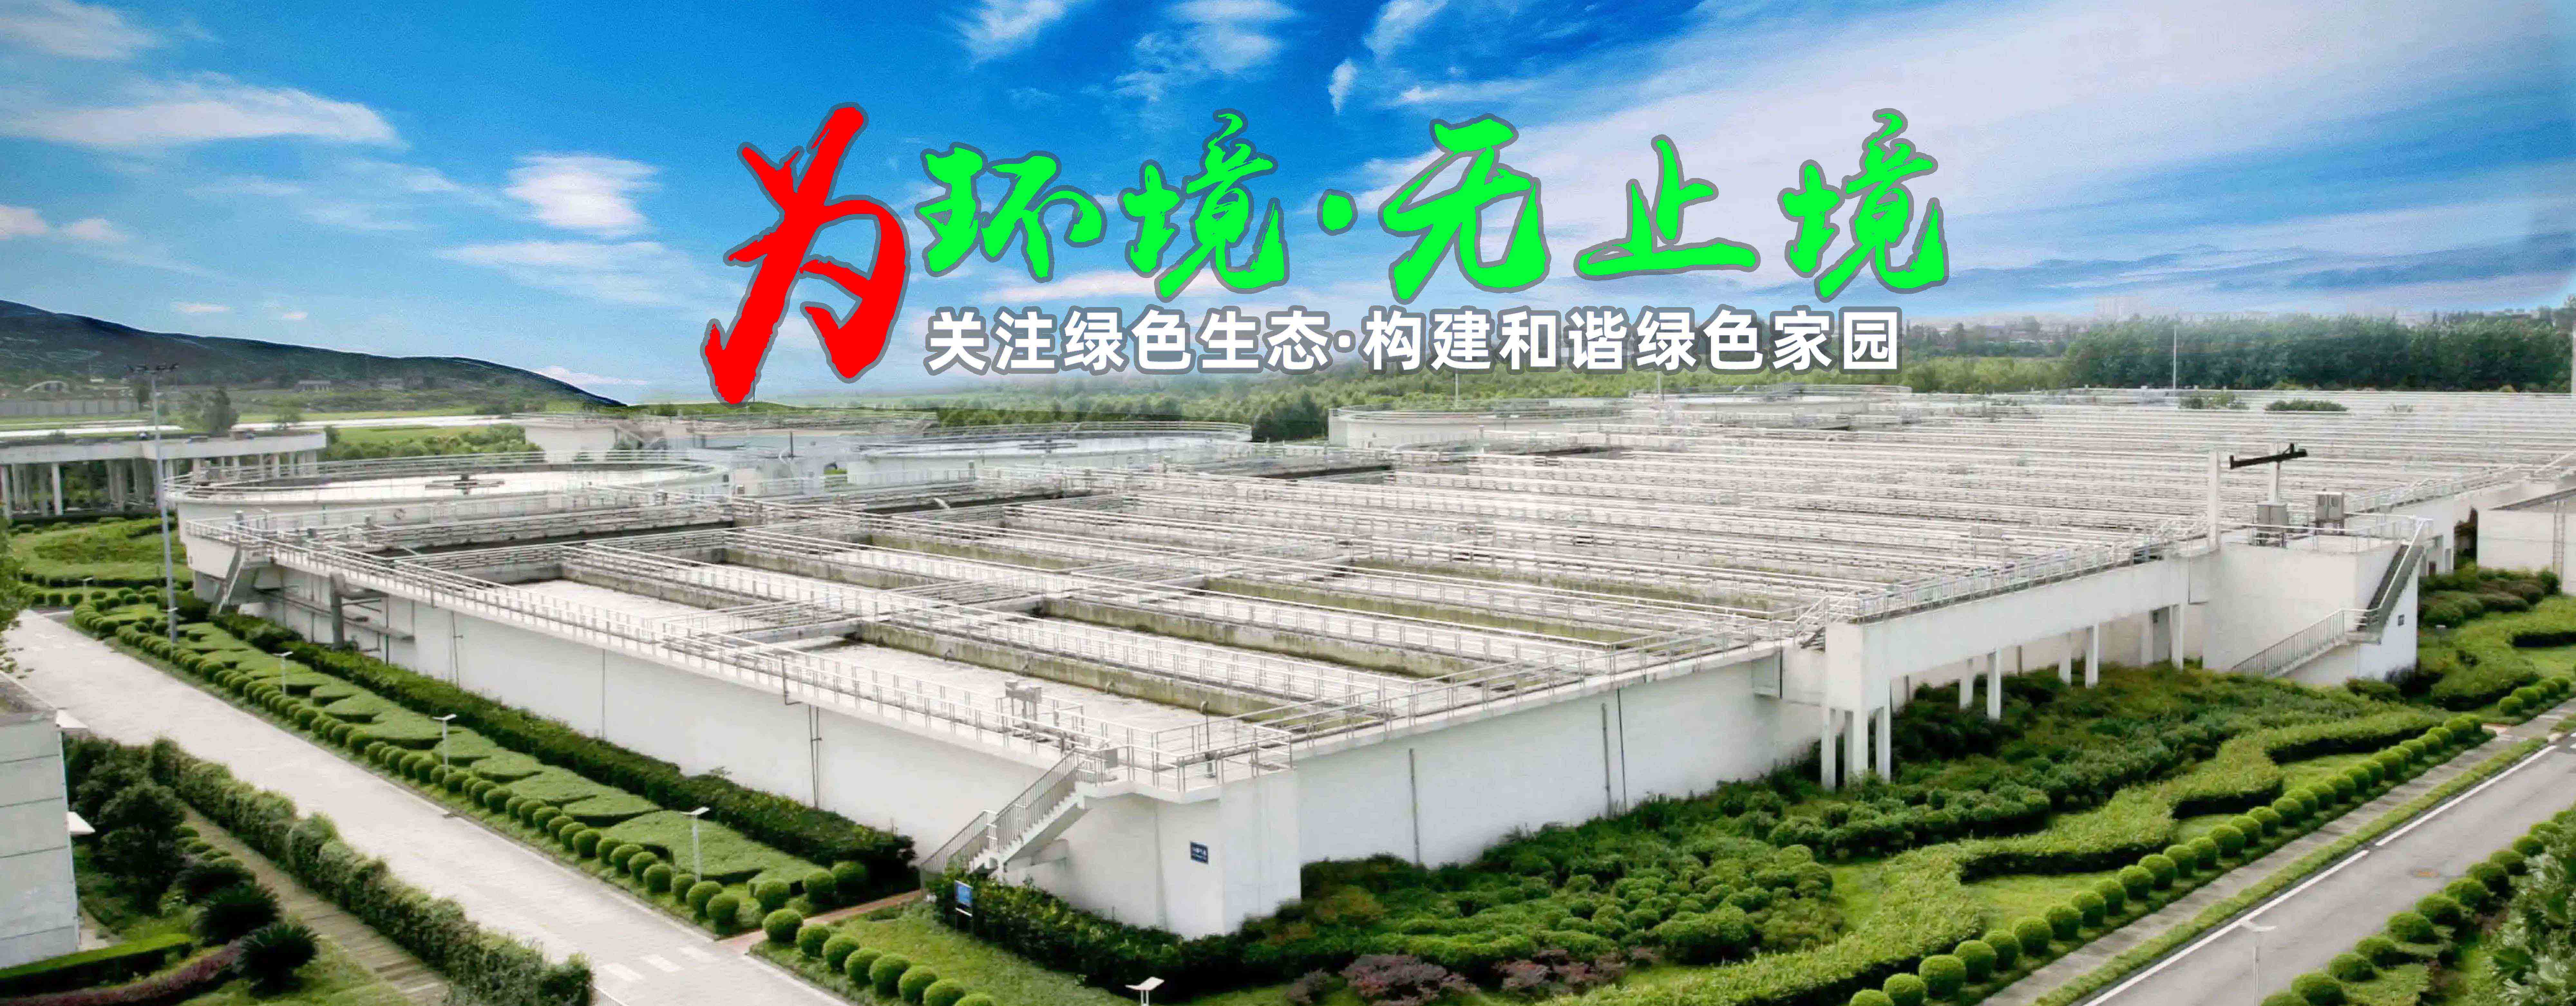 广州污水一体化处理设备优点-污水处理设备-广东德赢vwin环保